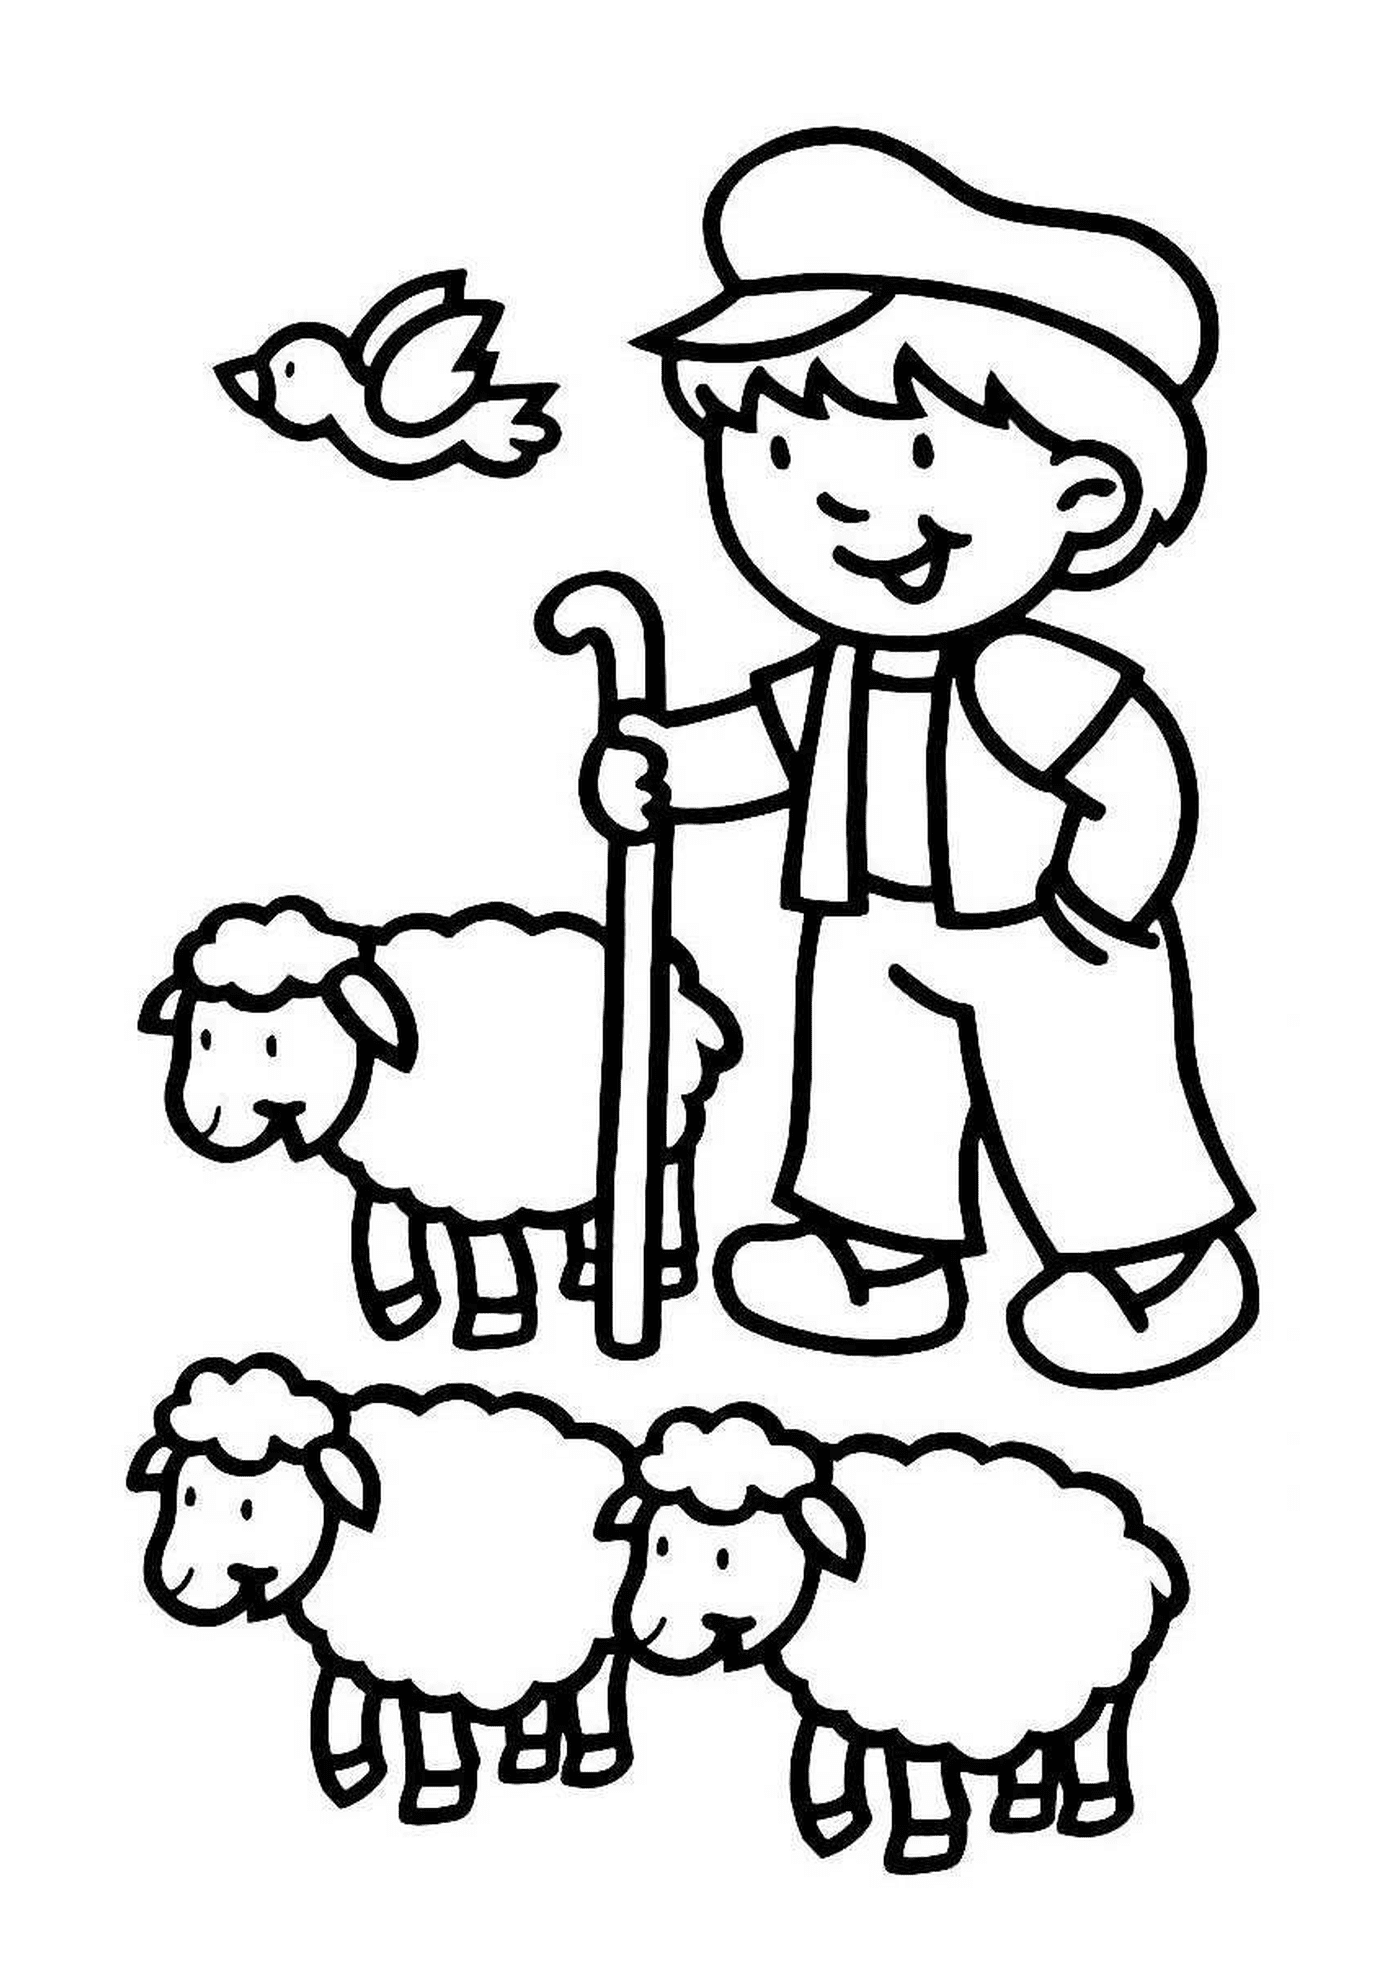  Agricoltore circondato da molte pecore 